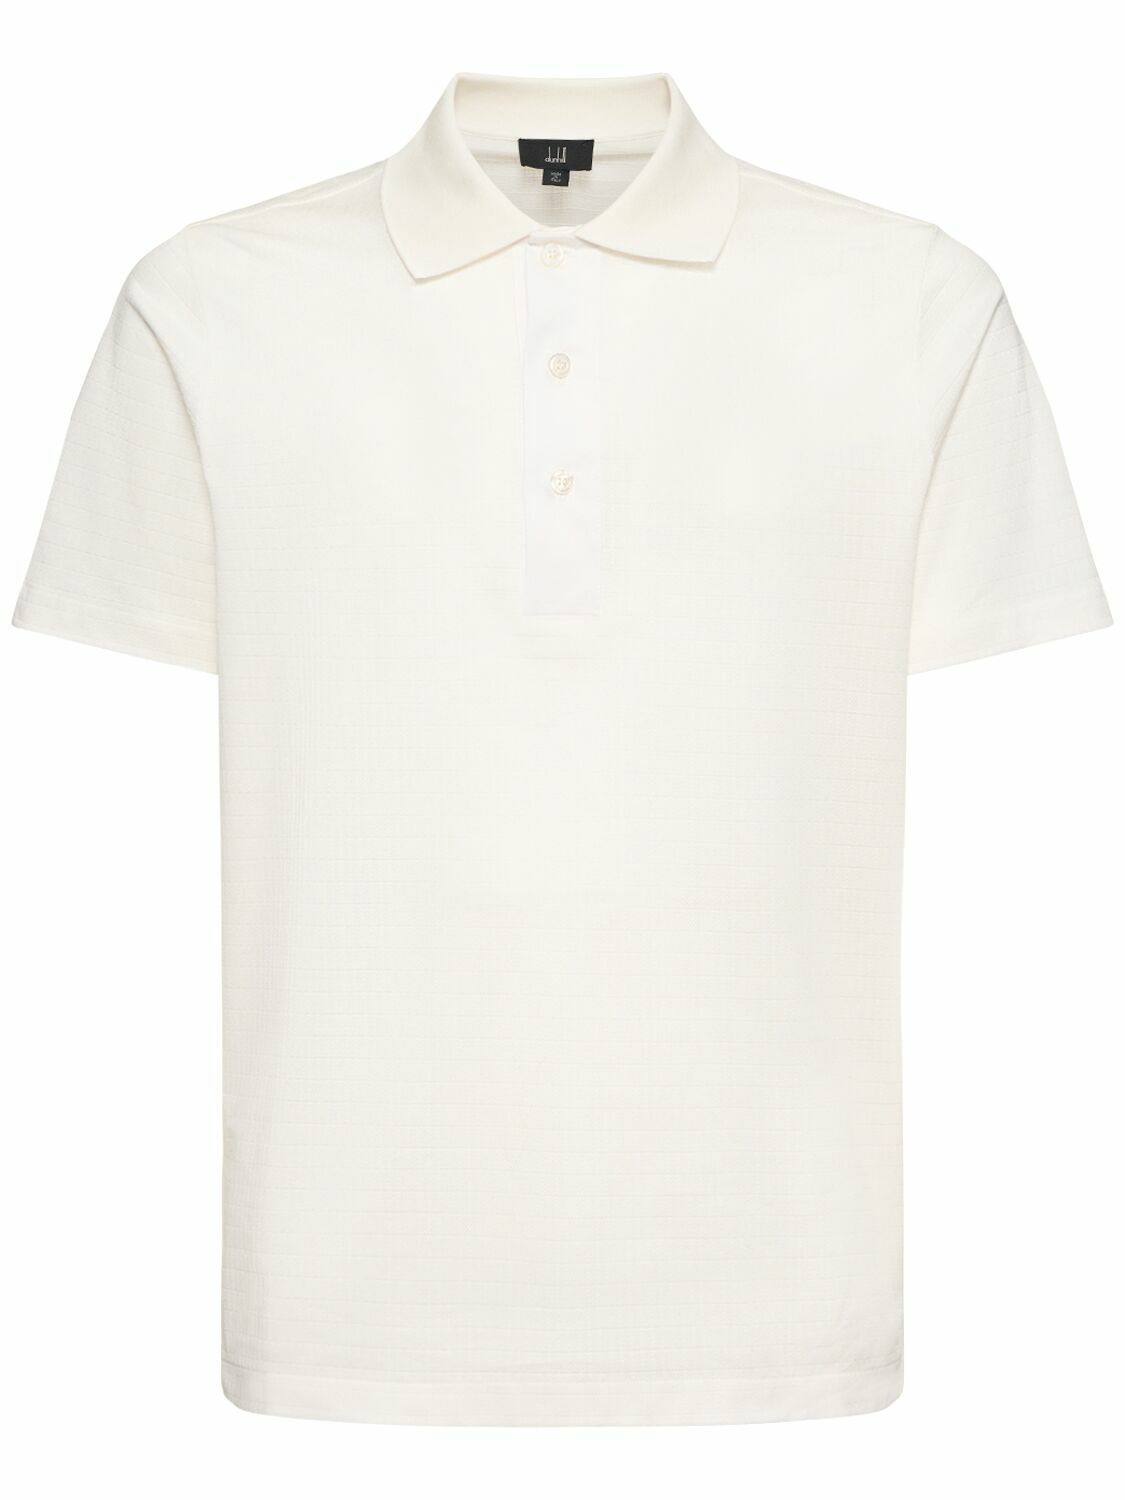 DUNHILL - Rollagas Cotton Polo Shirt Dunhill